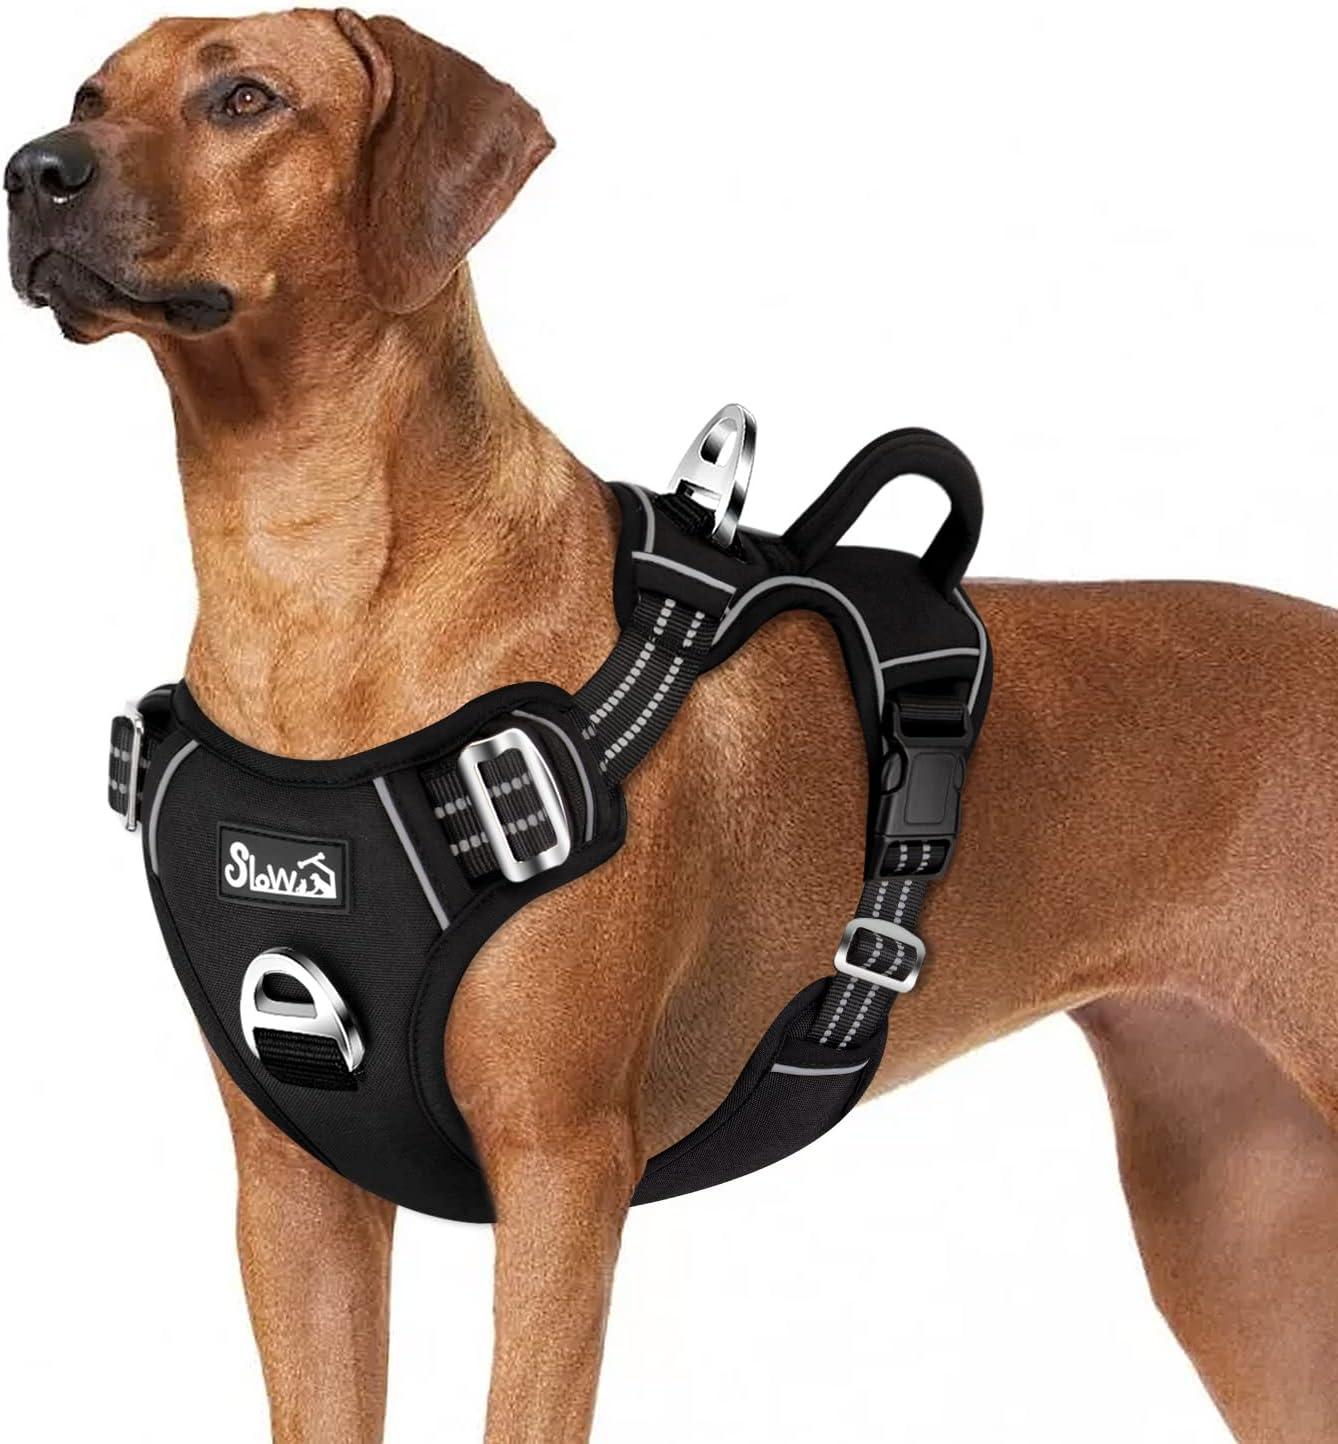 SlowTon Heavy Duty Dog Harness